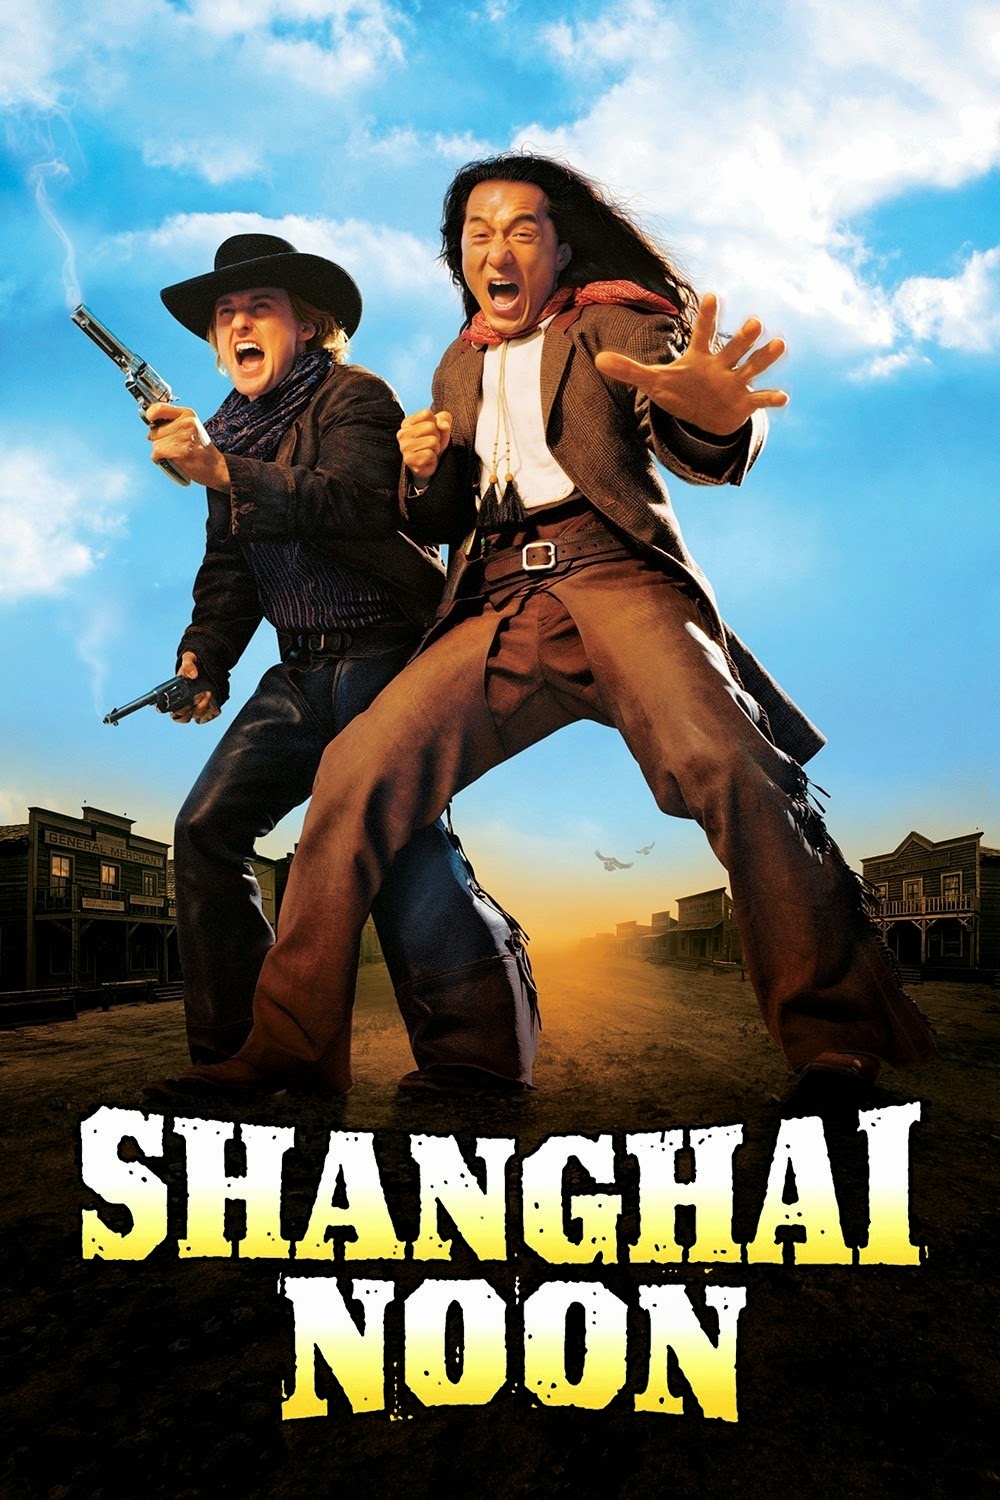 ดูหนังออนไลน์ฟรี Shanghai Noon (2000) เซียงไฮ นูน คู่ใหญ่ ฟัดข้ามโลก